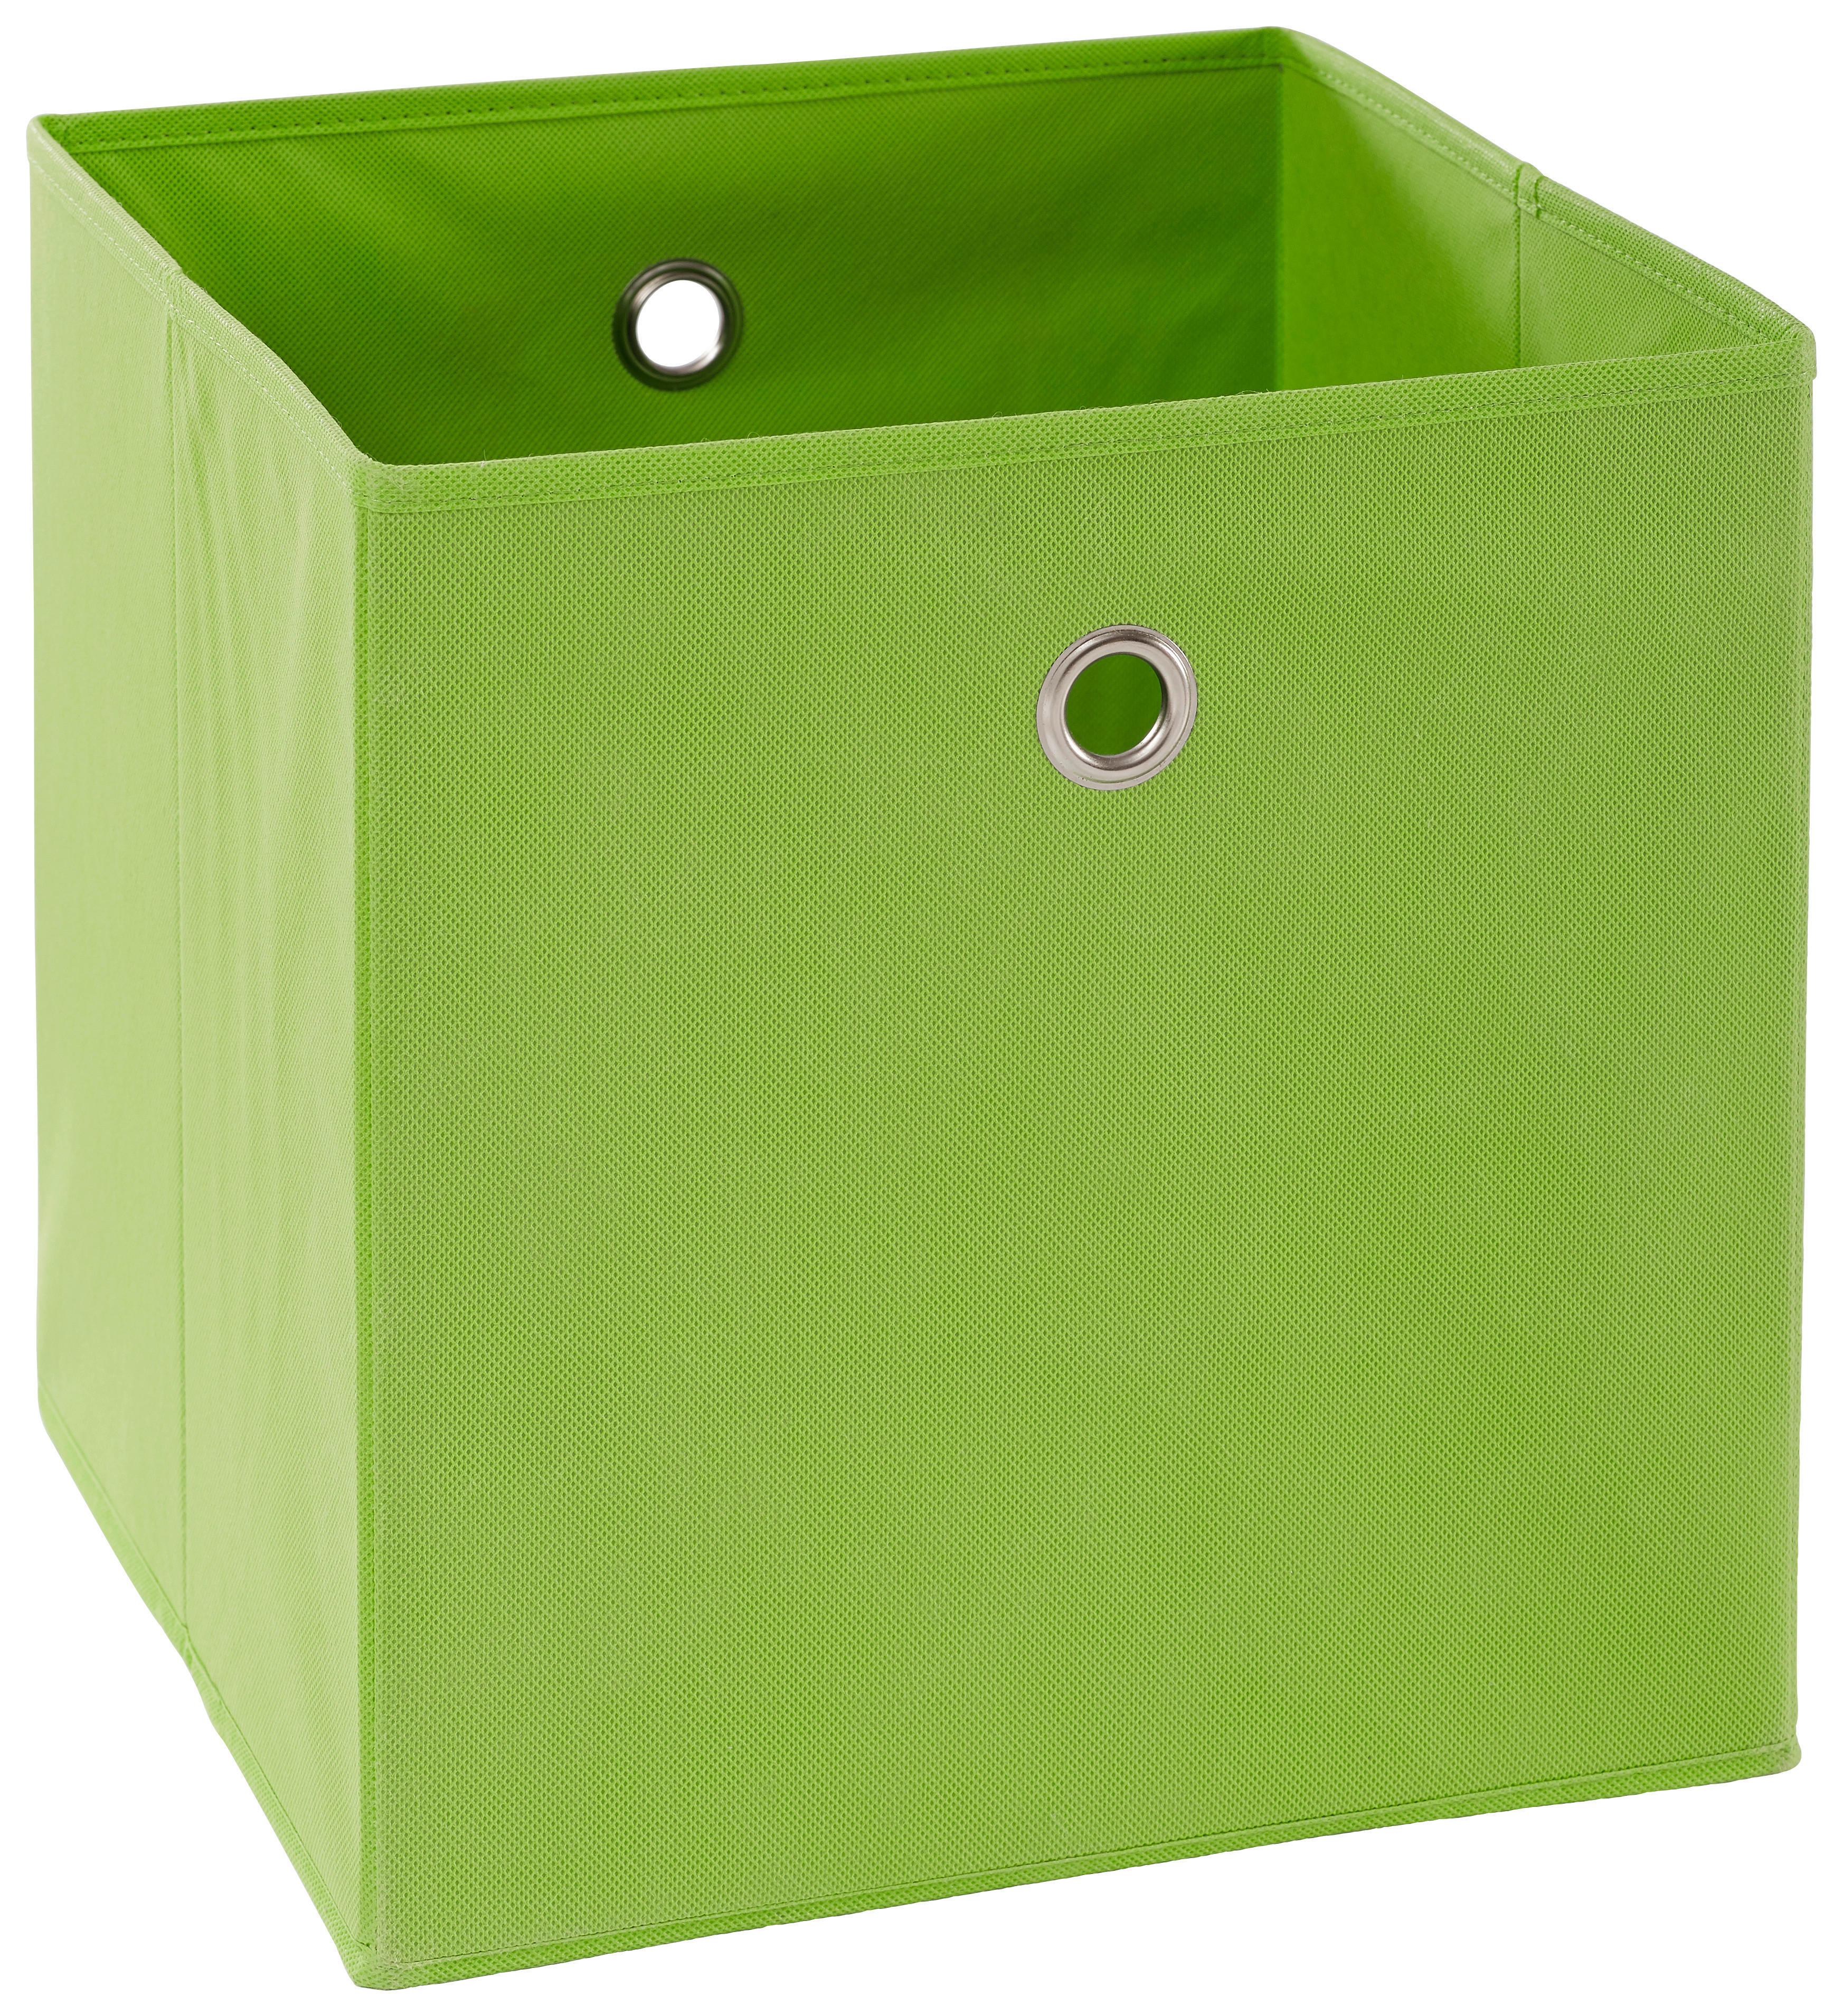 Faltbox in Grün 32x32x32 cm online kaufen